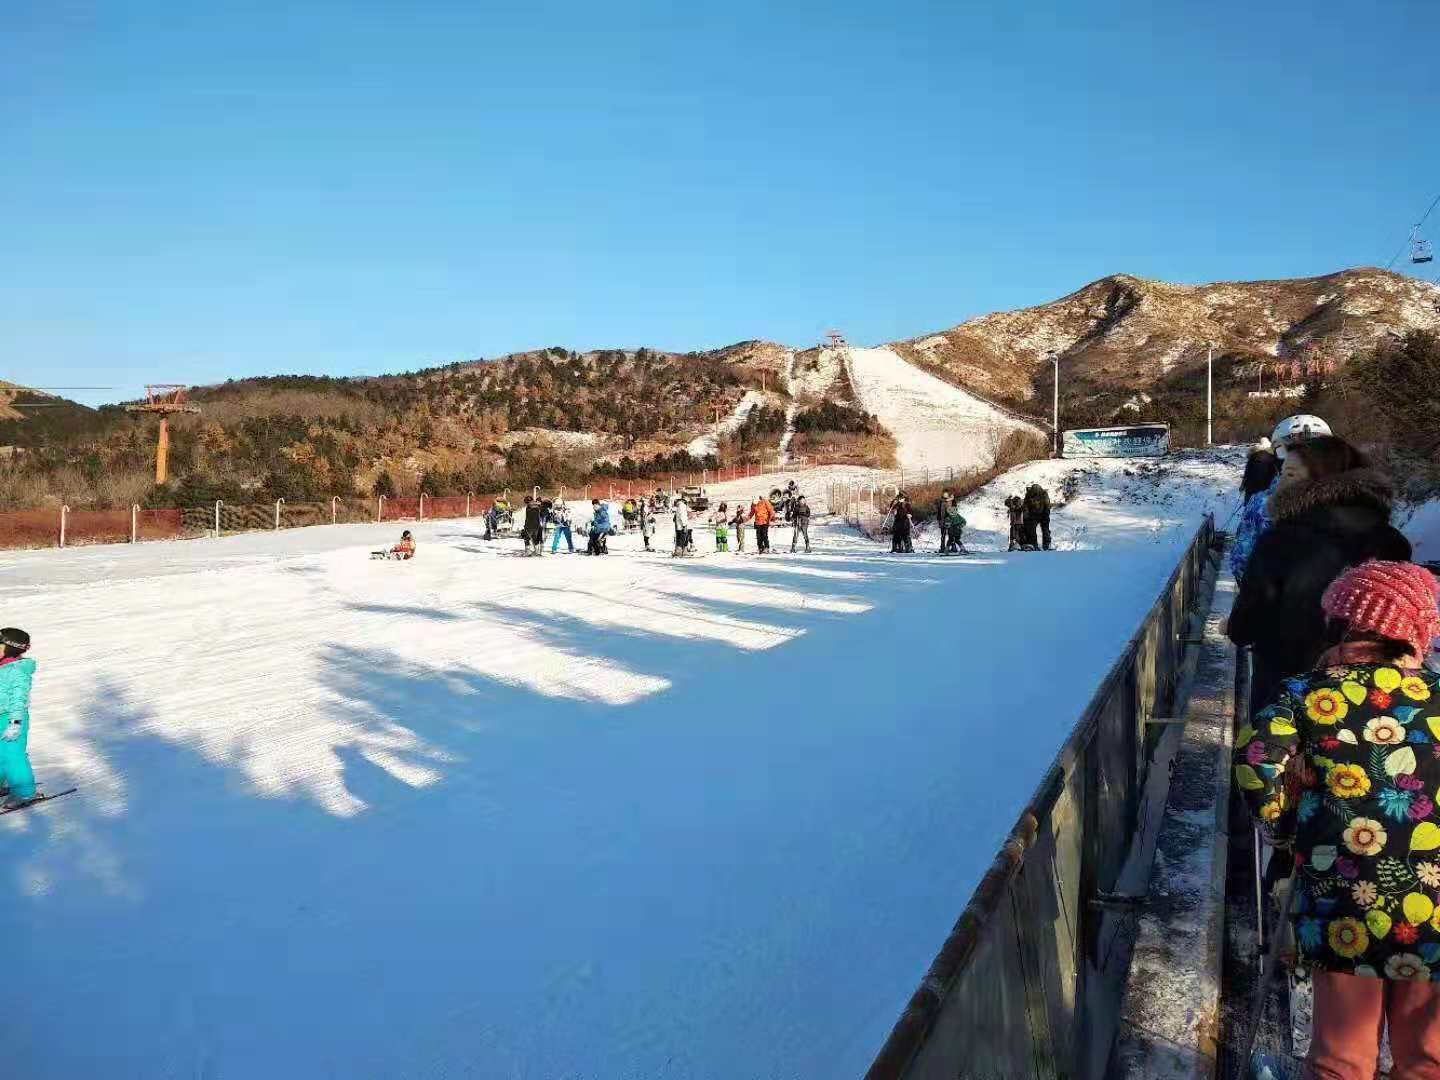 【温泉+滑雪】营口何家沟滑雪+熊岳小雨温泉2日